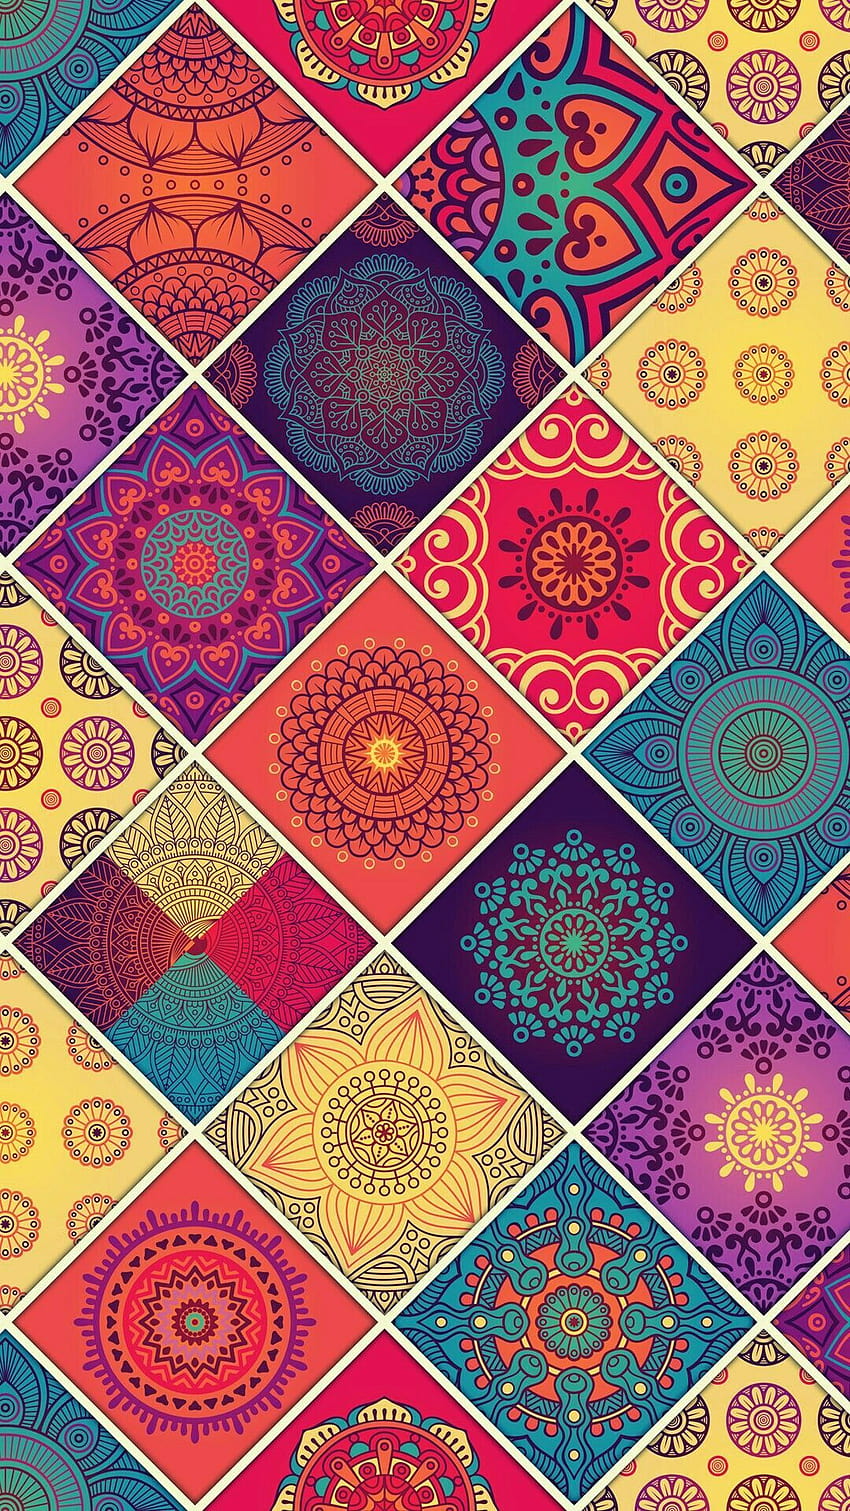 Mandala IPhone Wallpaper 67 images